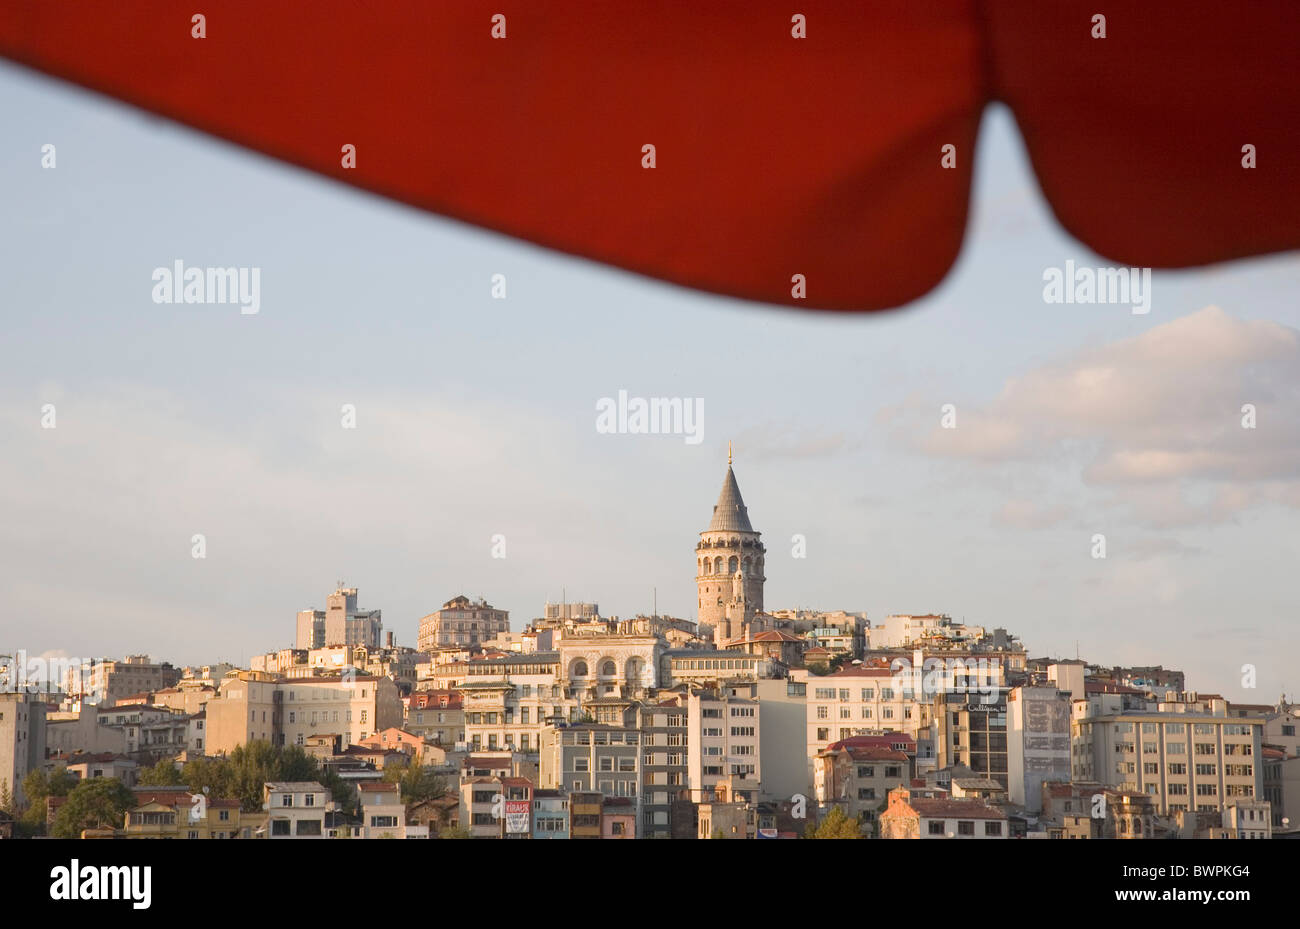 Turchia Istanbul Sultanahmet Vista della Torre di Galata in Beyoglu dall'ombra del baldacchino rosso accanto a ponte Galata. Foto Stock